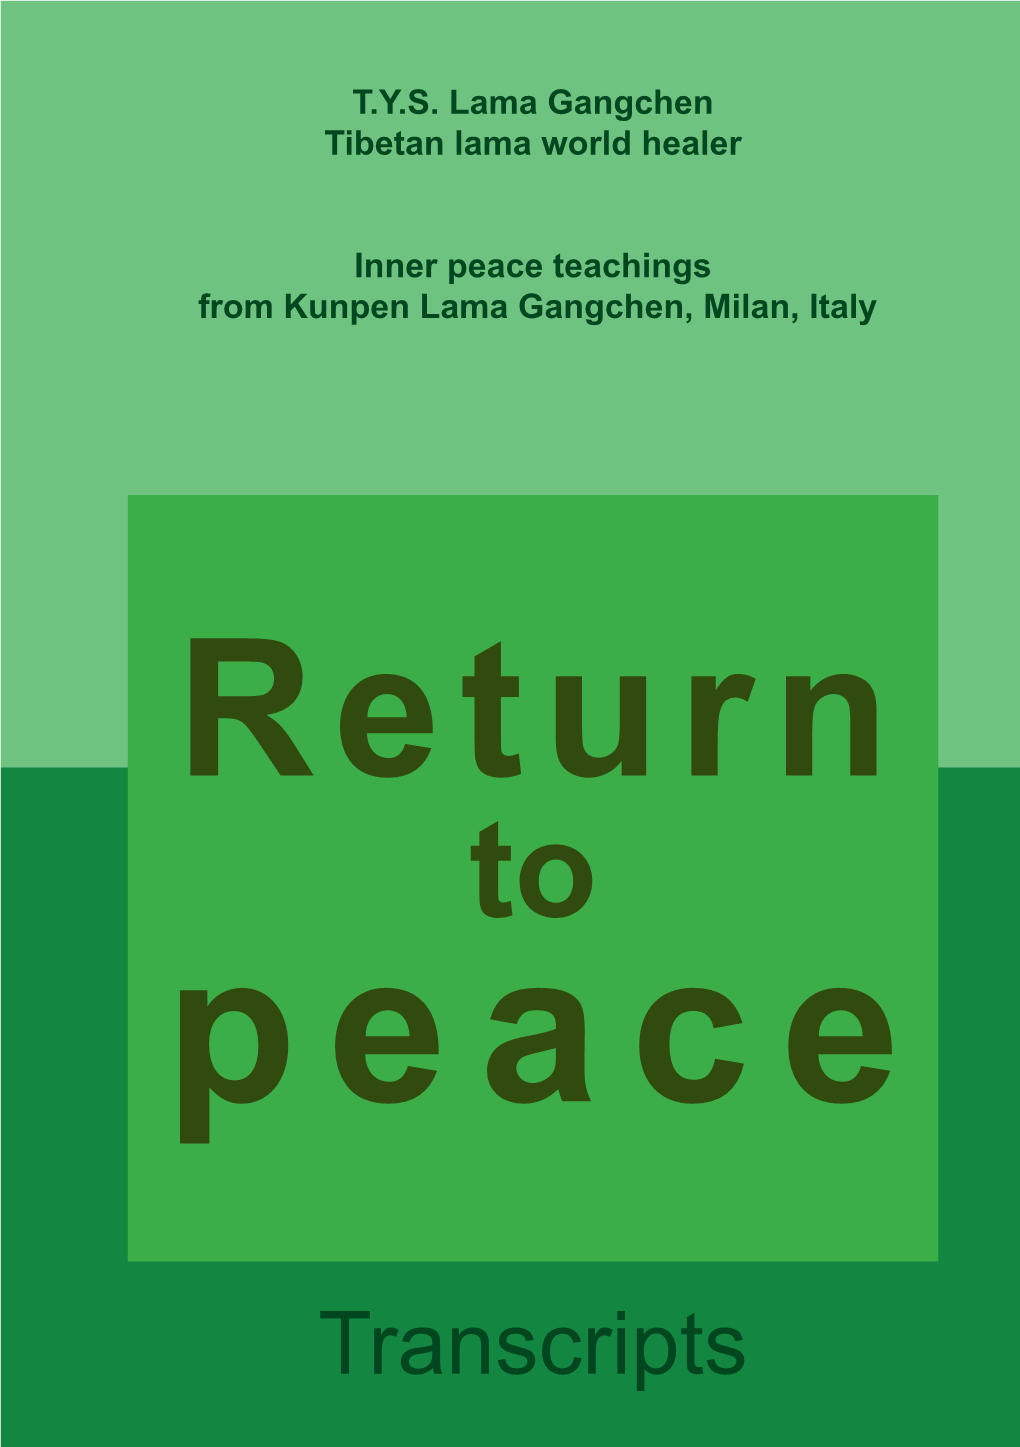 Peace Teachings from Kunpen Lama Gangchen, Milan, Italy